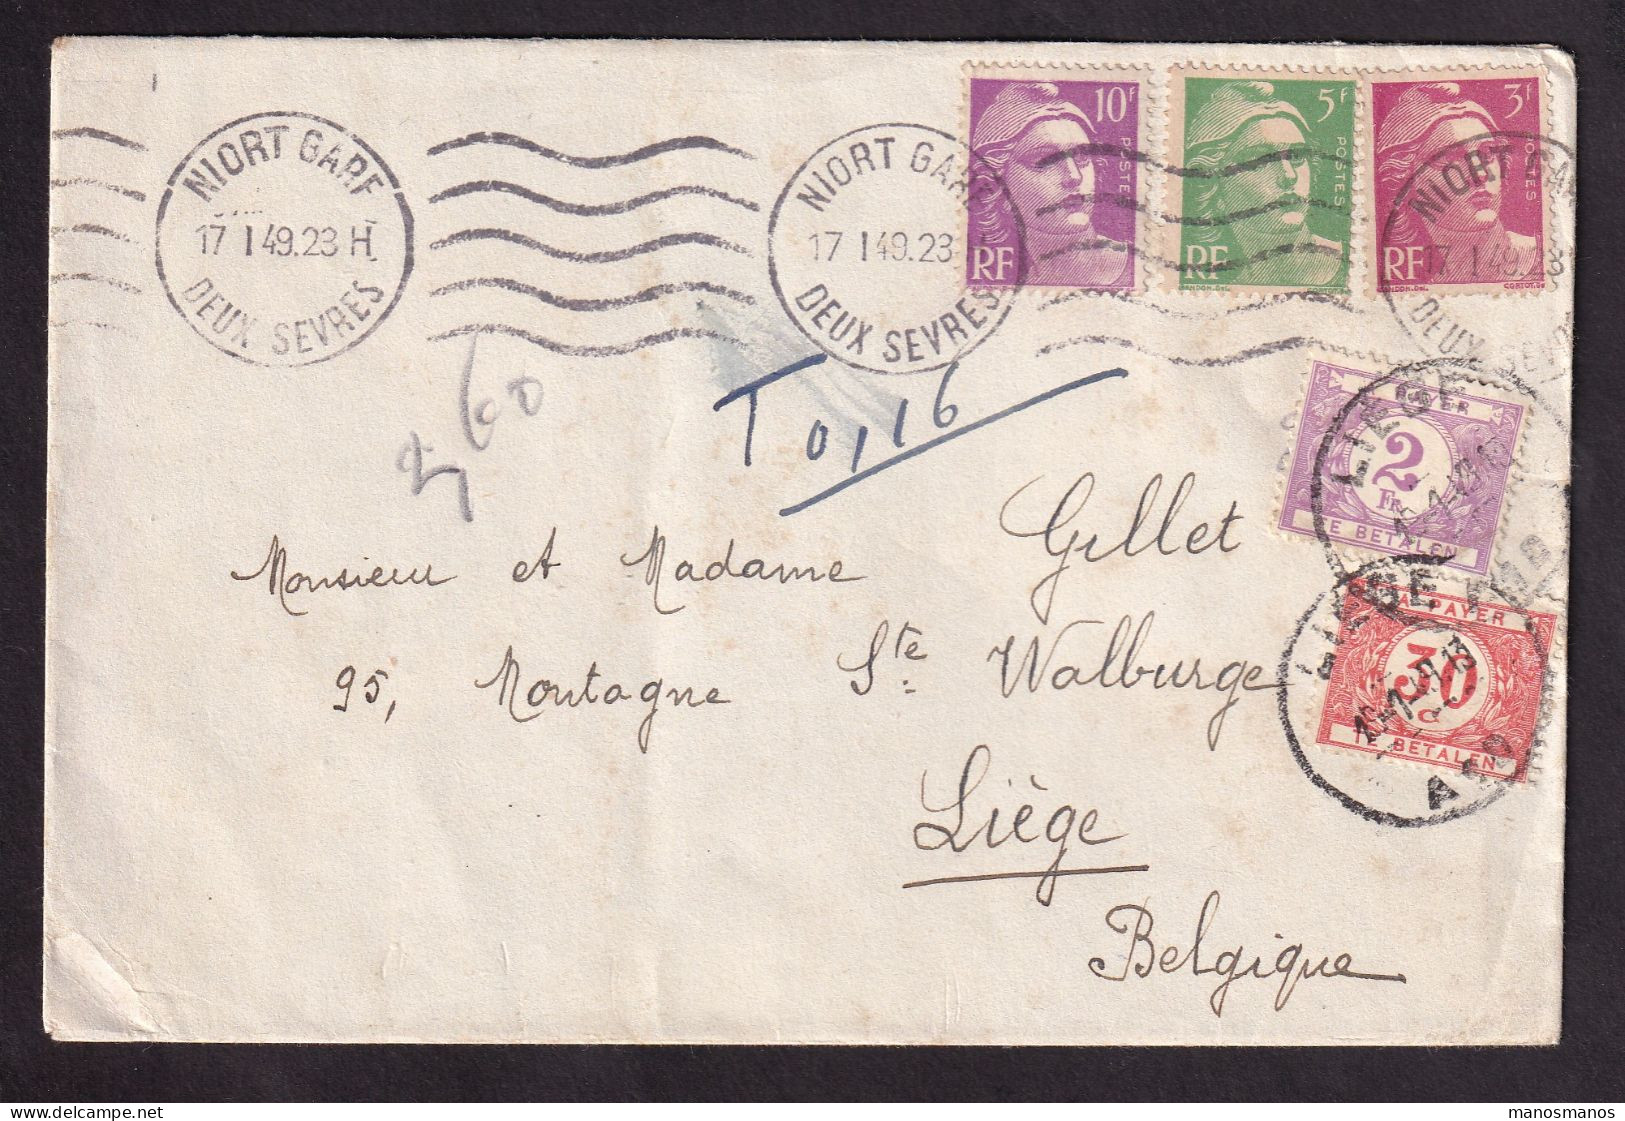 DDGG 047 - Enveloppe TP Marianne De Gandon NIORT 1949 -  Taxée 2 F 30 à LIEGE Belgique - Man. T 0,16 - 1945-54 Marianne De Gandon